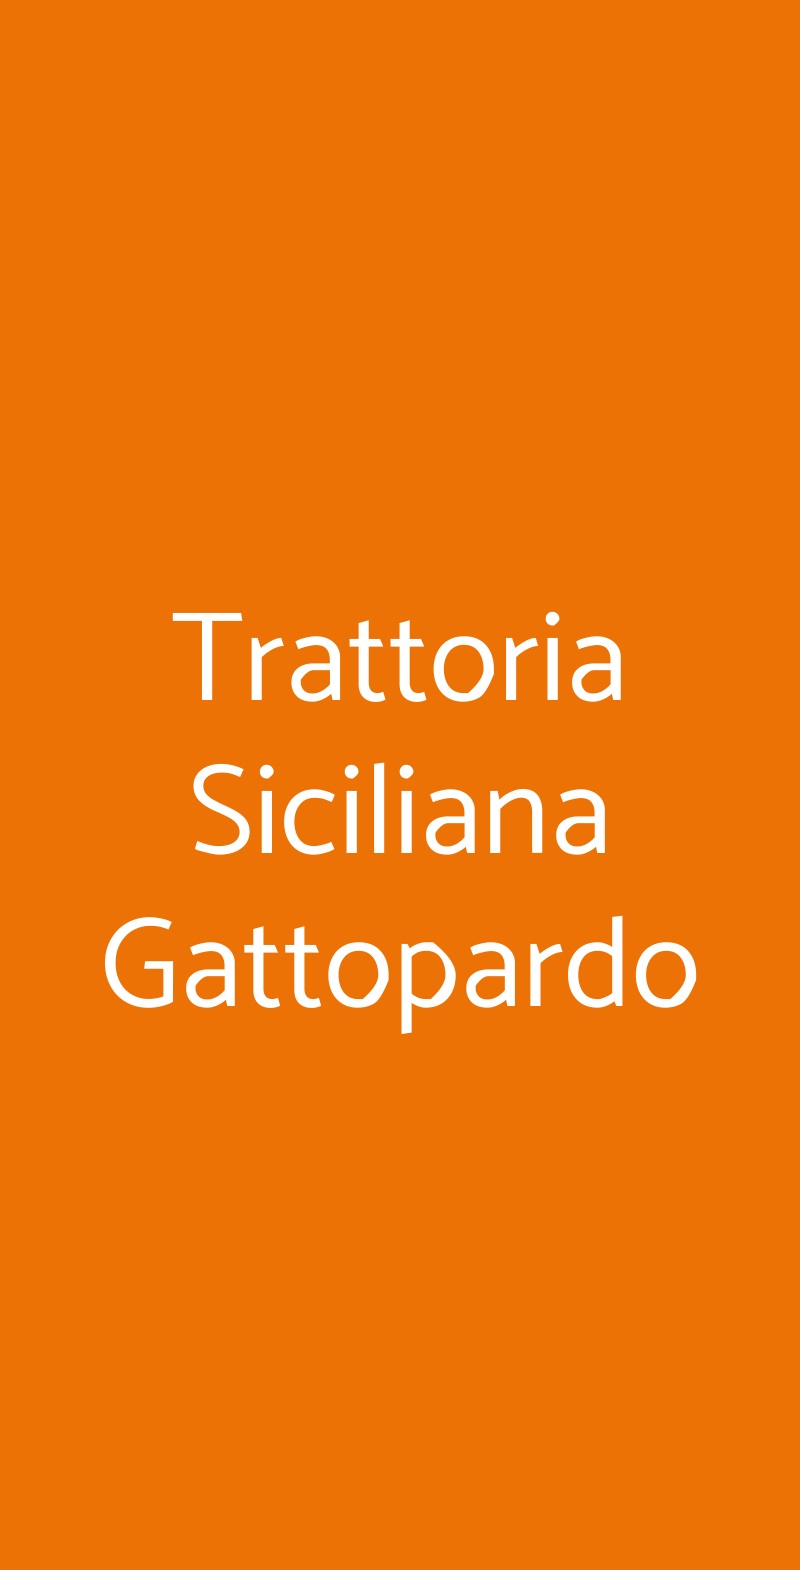 Trattoria Siciliana Gattopardo Milano menù 1 pagina